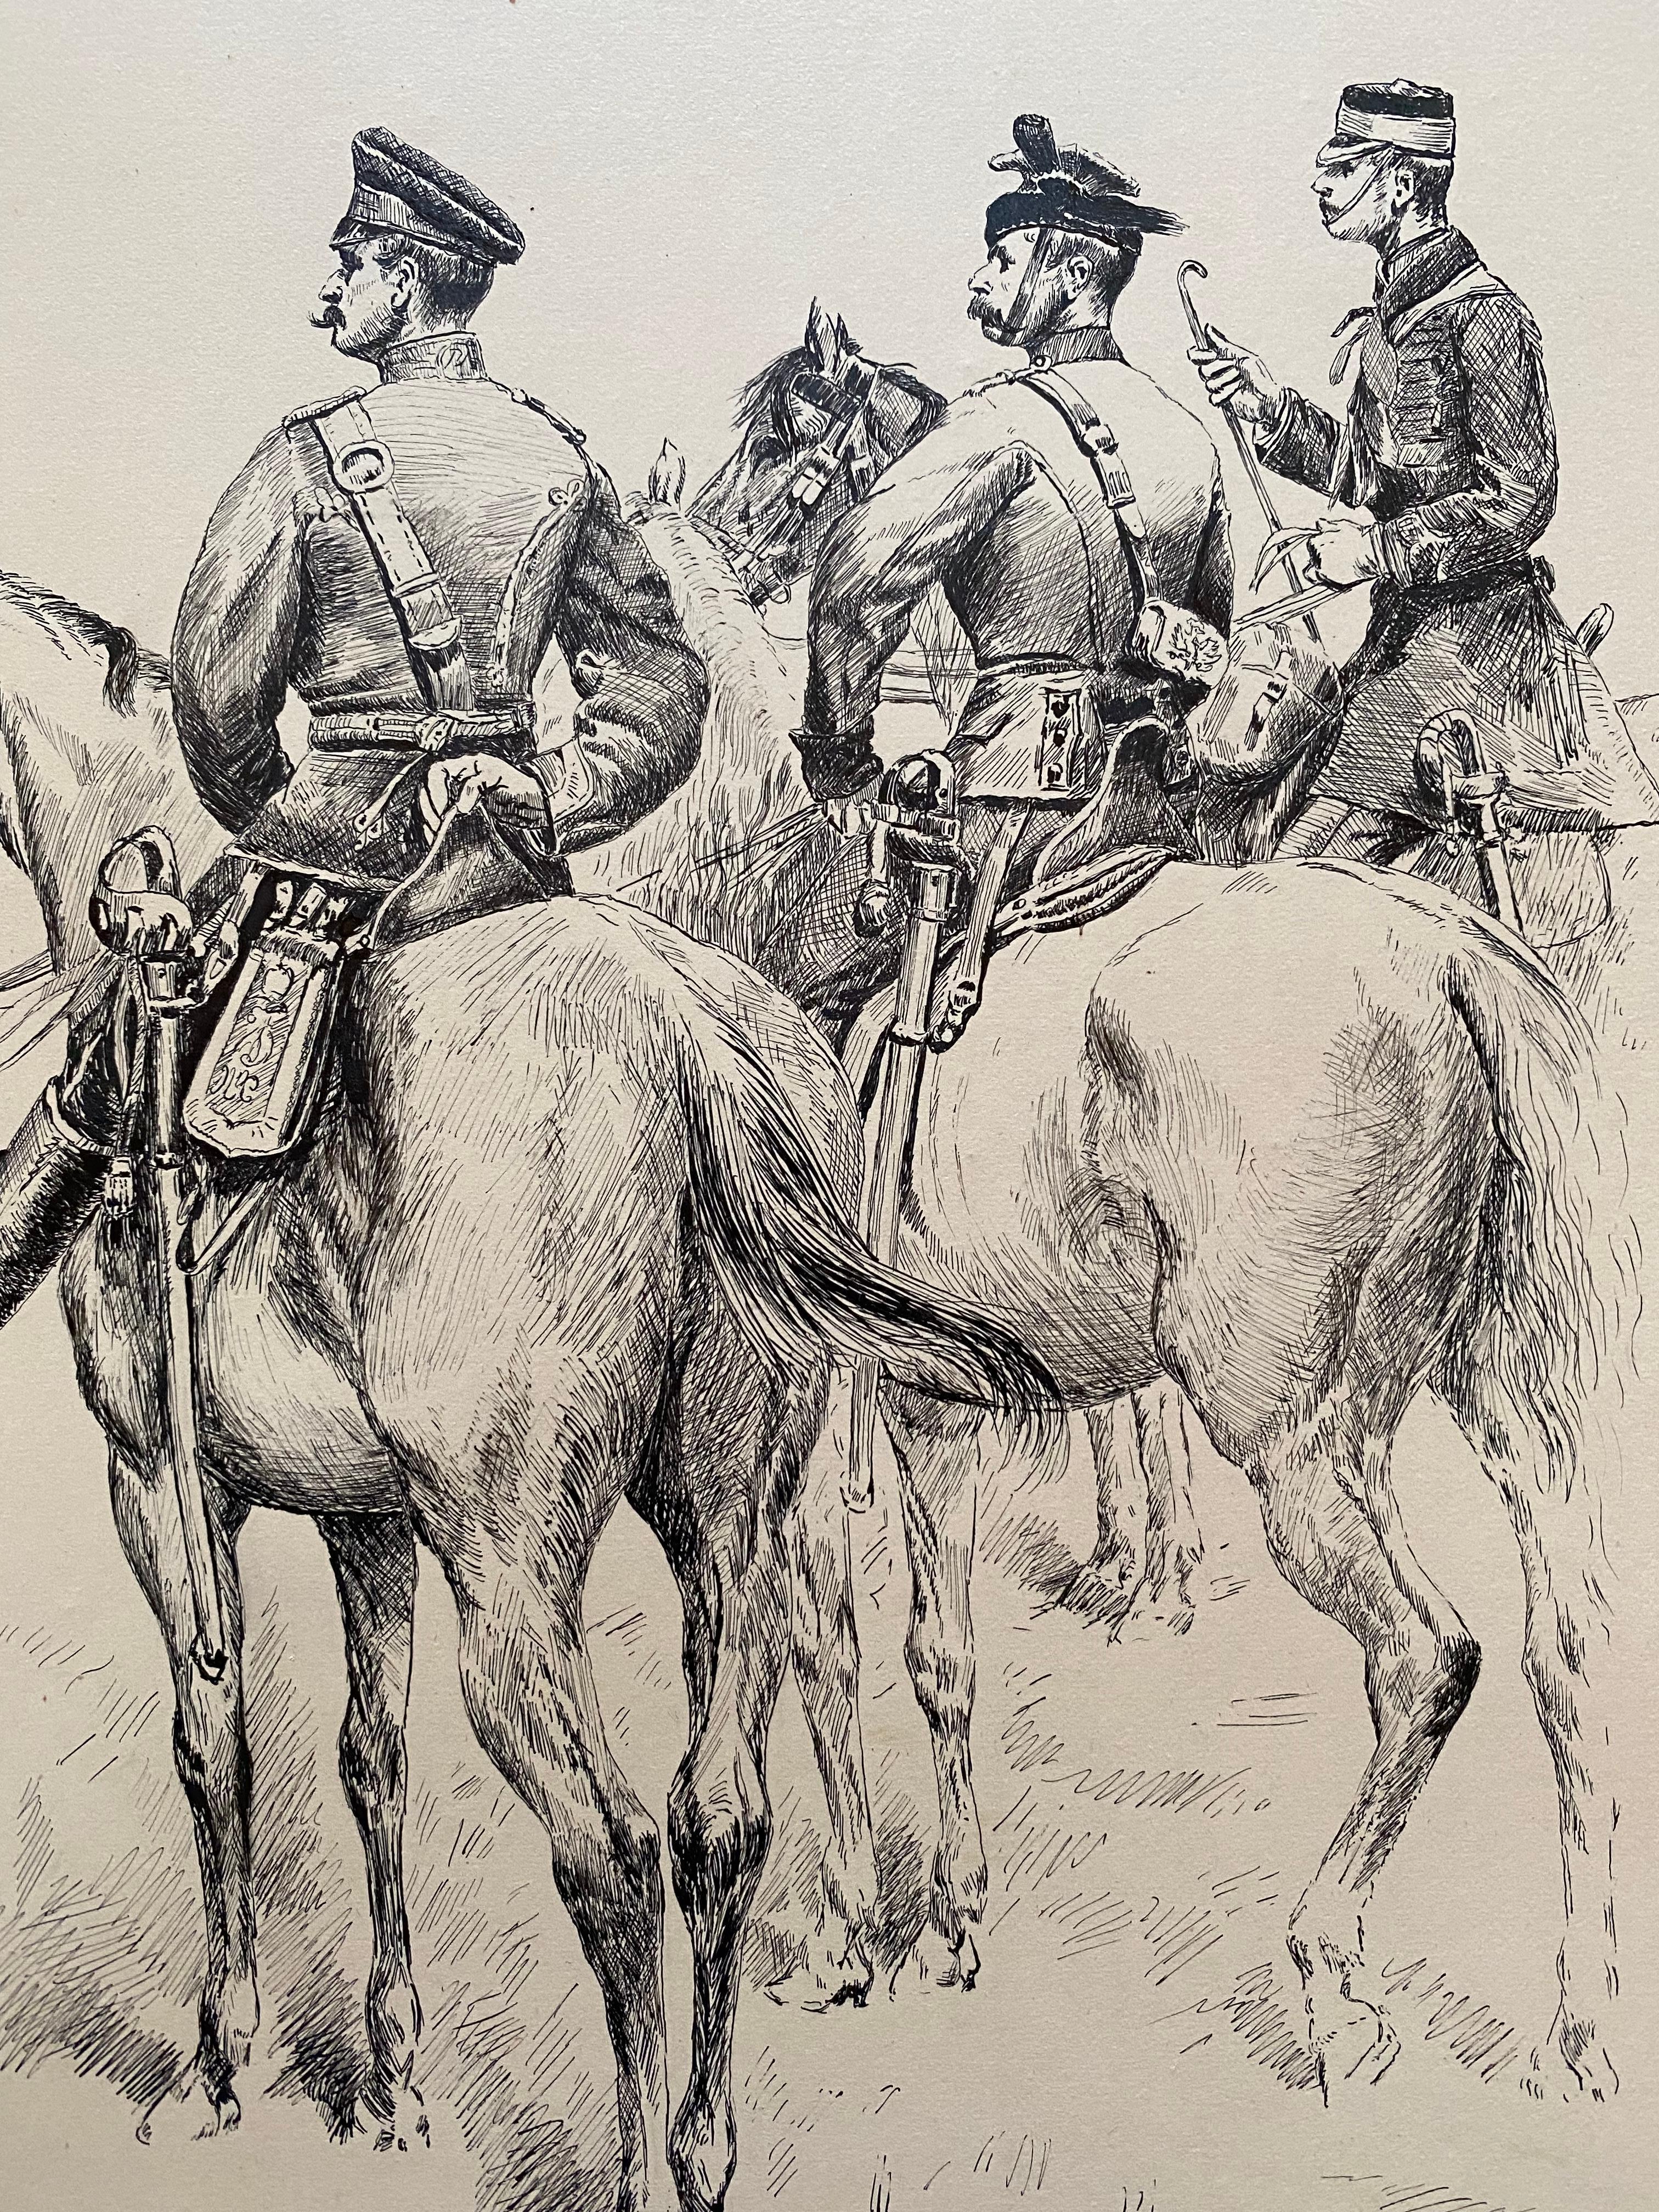 Originale Feder- und Tuschezeichnung auf schwerem Karton von französischen Soldaten zu Pferd von dem bekannten französischen Militärkünstler Edouard Detaille.  Signiert unten links und datiert 1882.  Der Zustand ist sehr gut. Die Zeichnung ist in